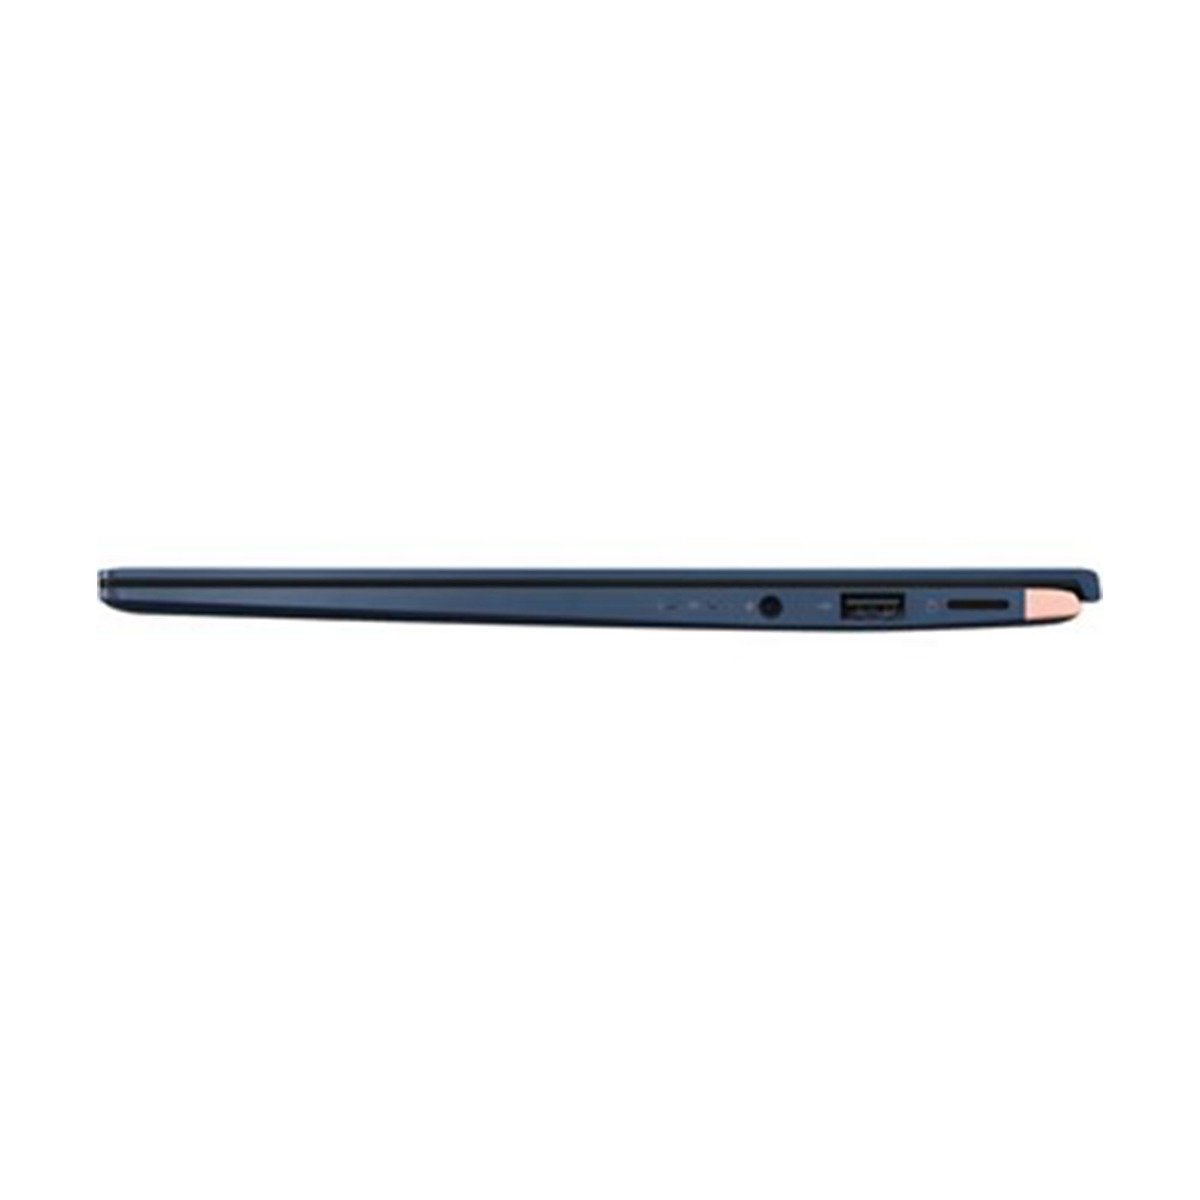 Asus ZenBook 14 UX433FN-A5021T Core i7 Royal Blue